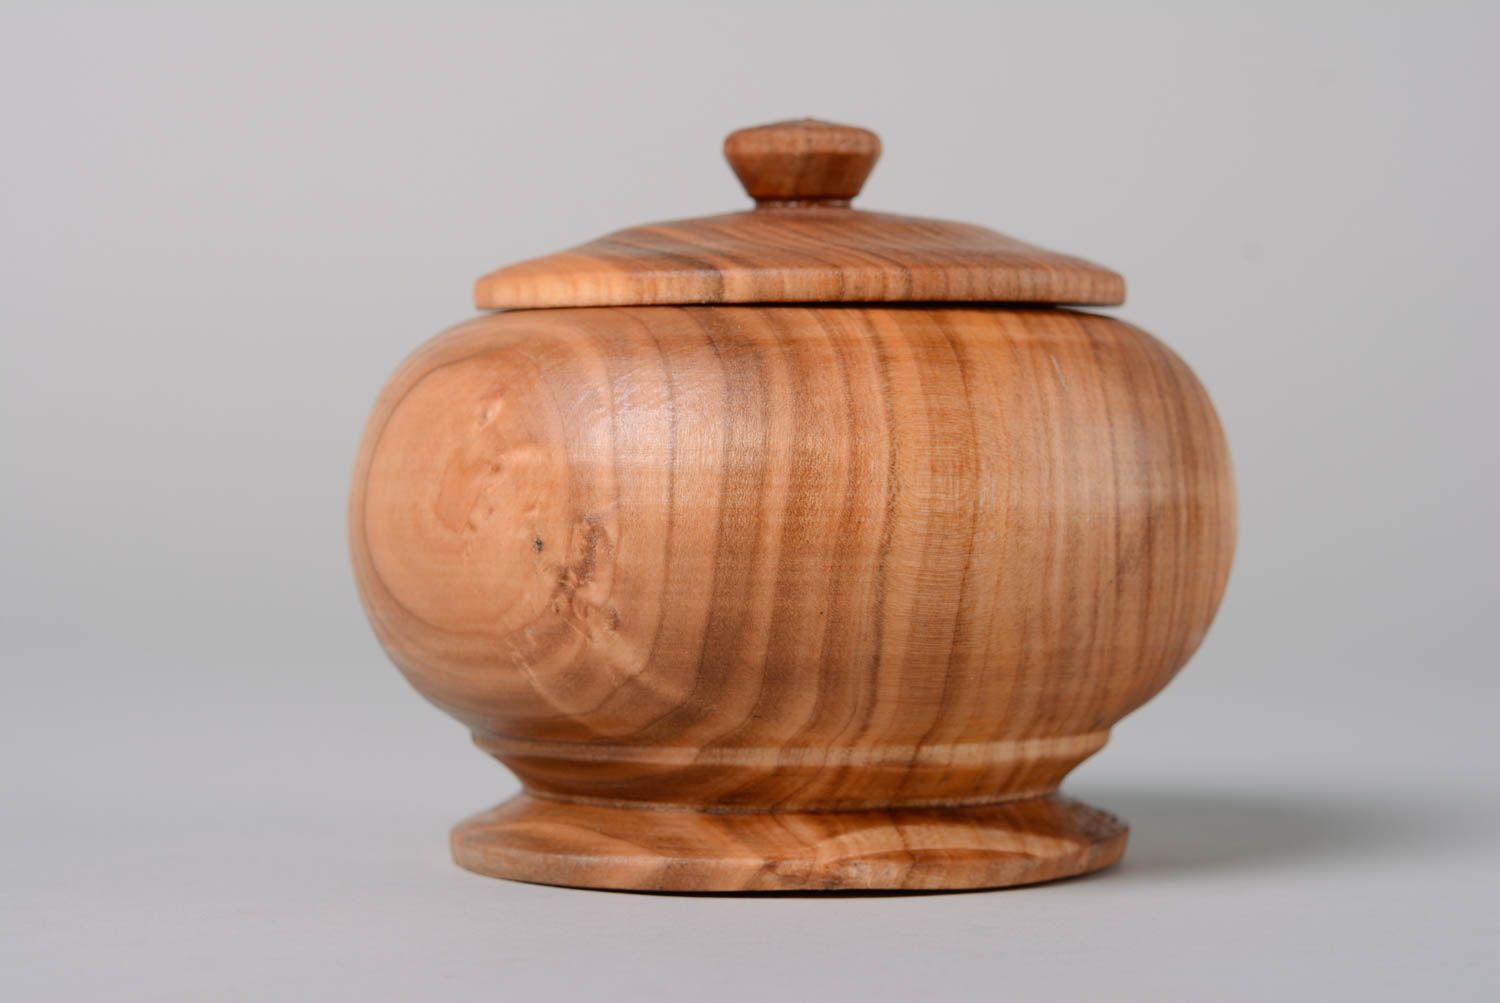 Wooden decorative pot with lid for kitchen décor 0,7 lb photo 1